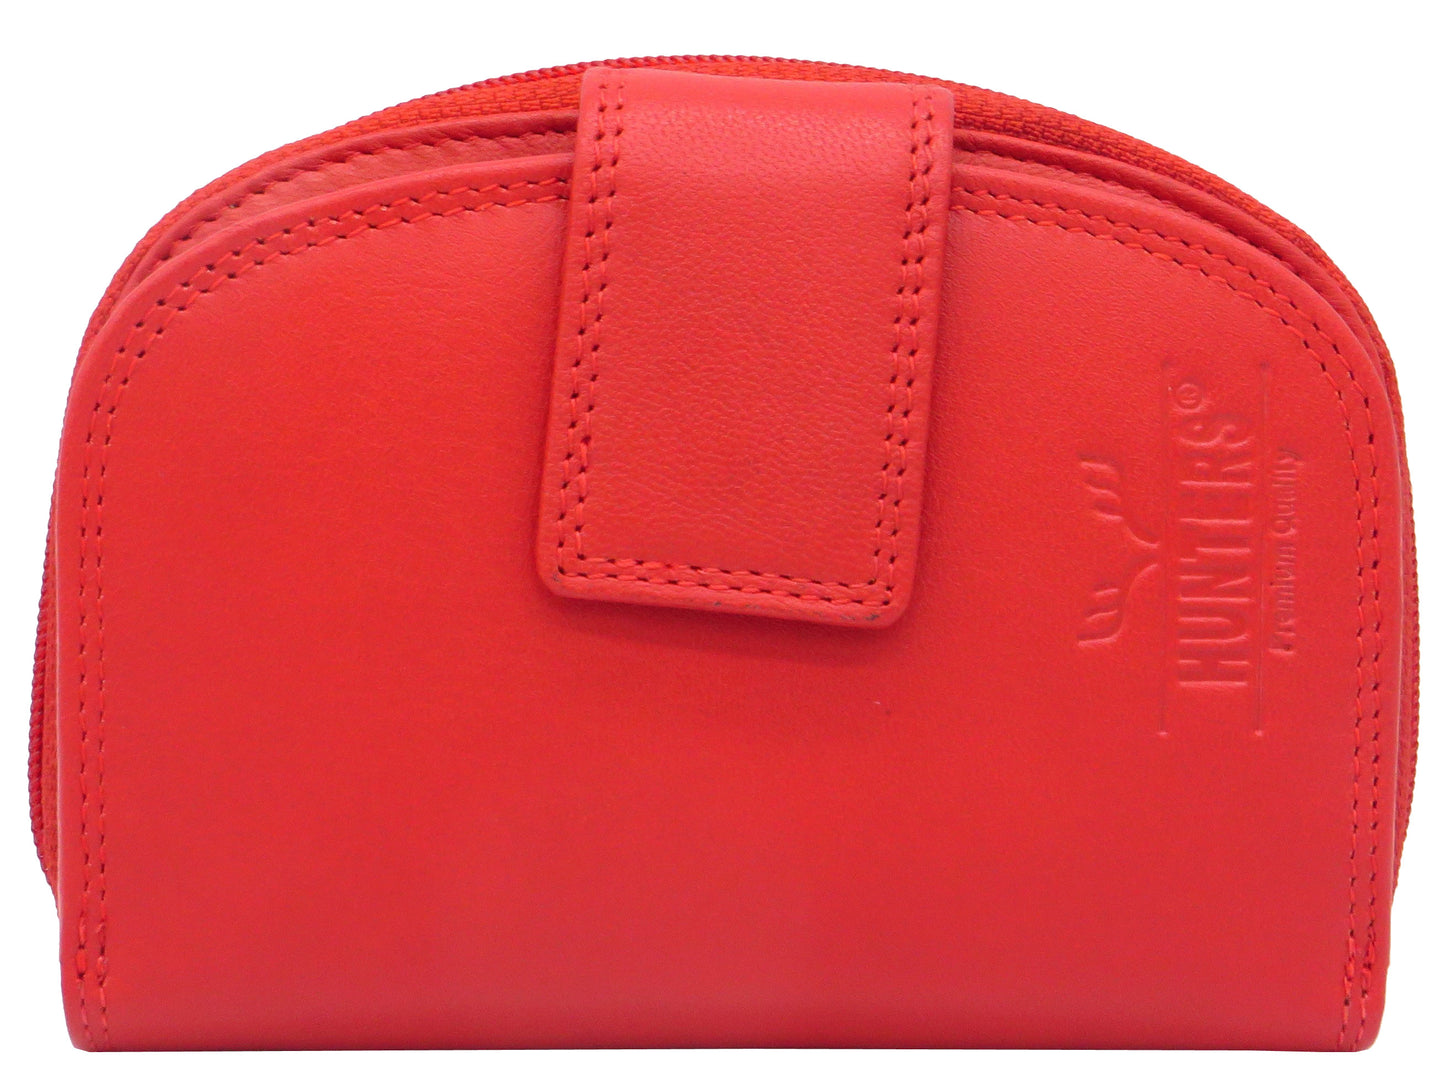 Geldbörse Portemonnaie für Damen rot Rindsleder mit RFID Schutz LW009